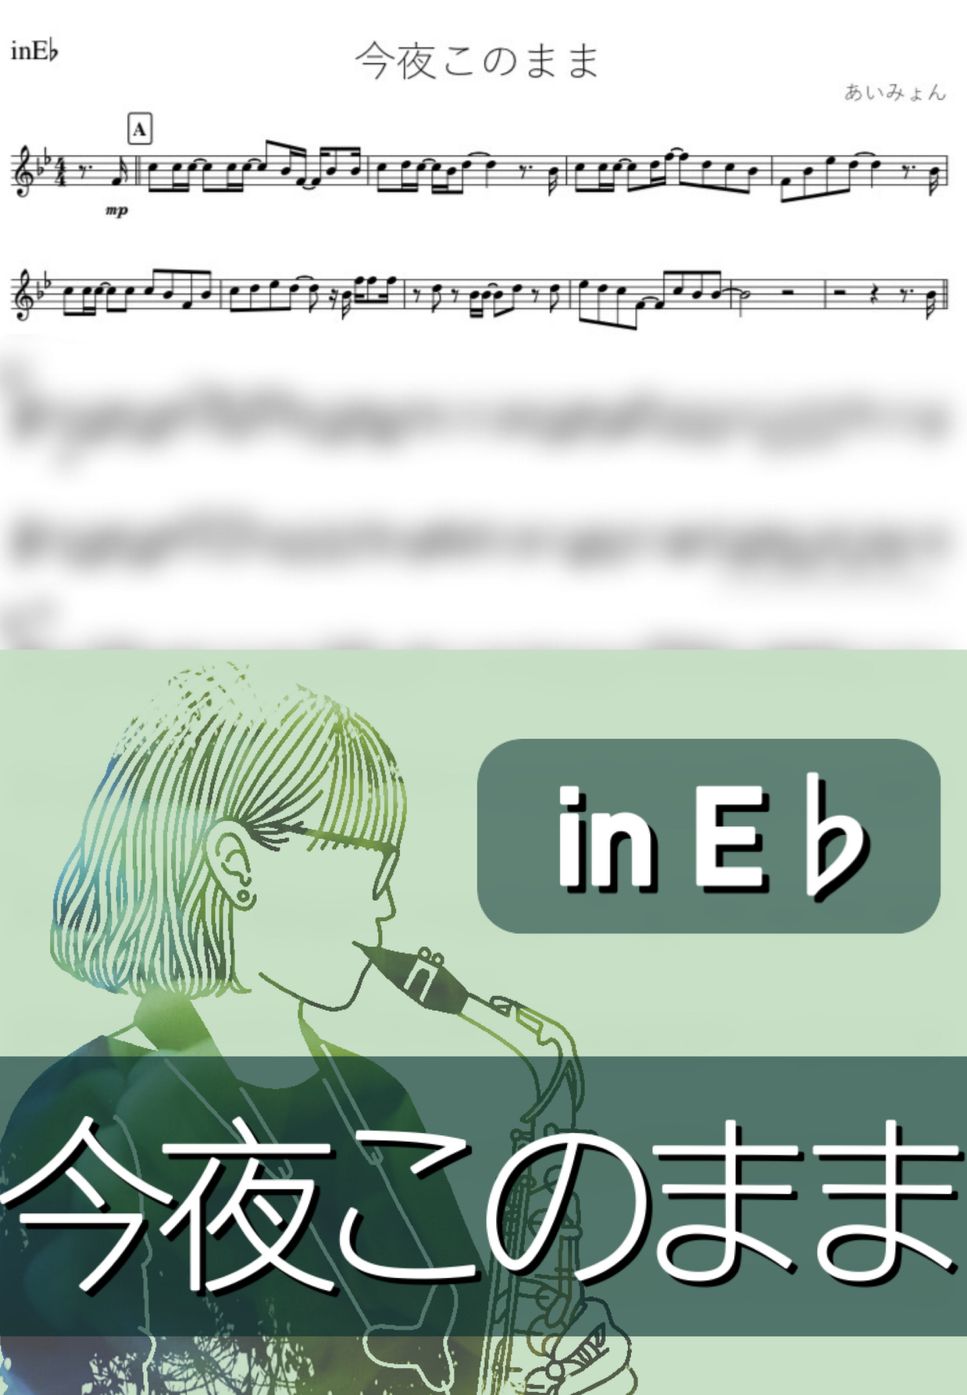 あいみょん - 今夜このまま (E♭) by kanamusic